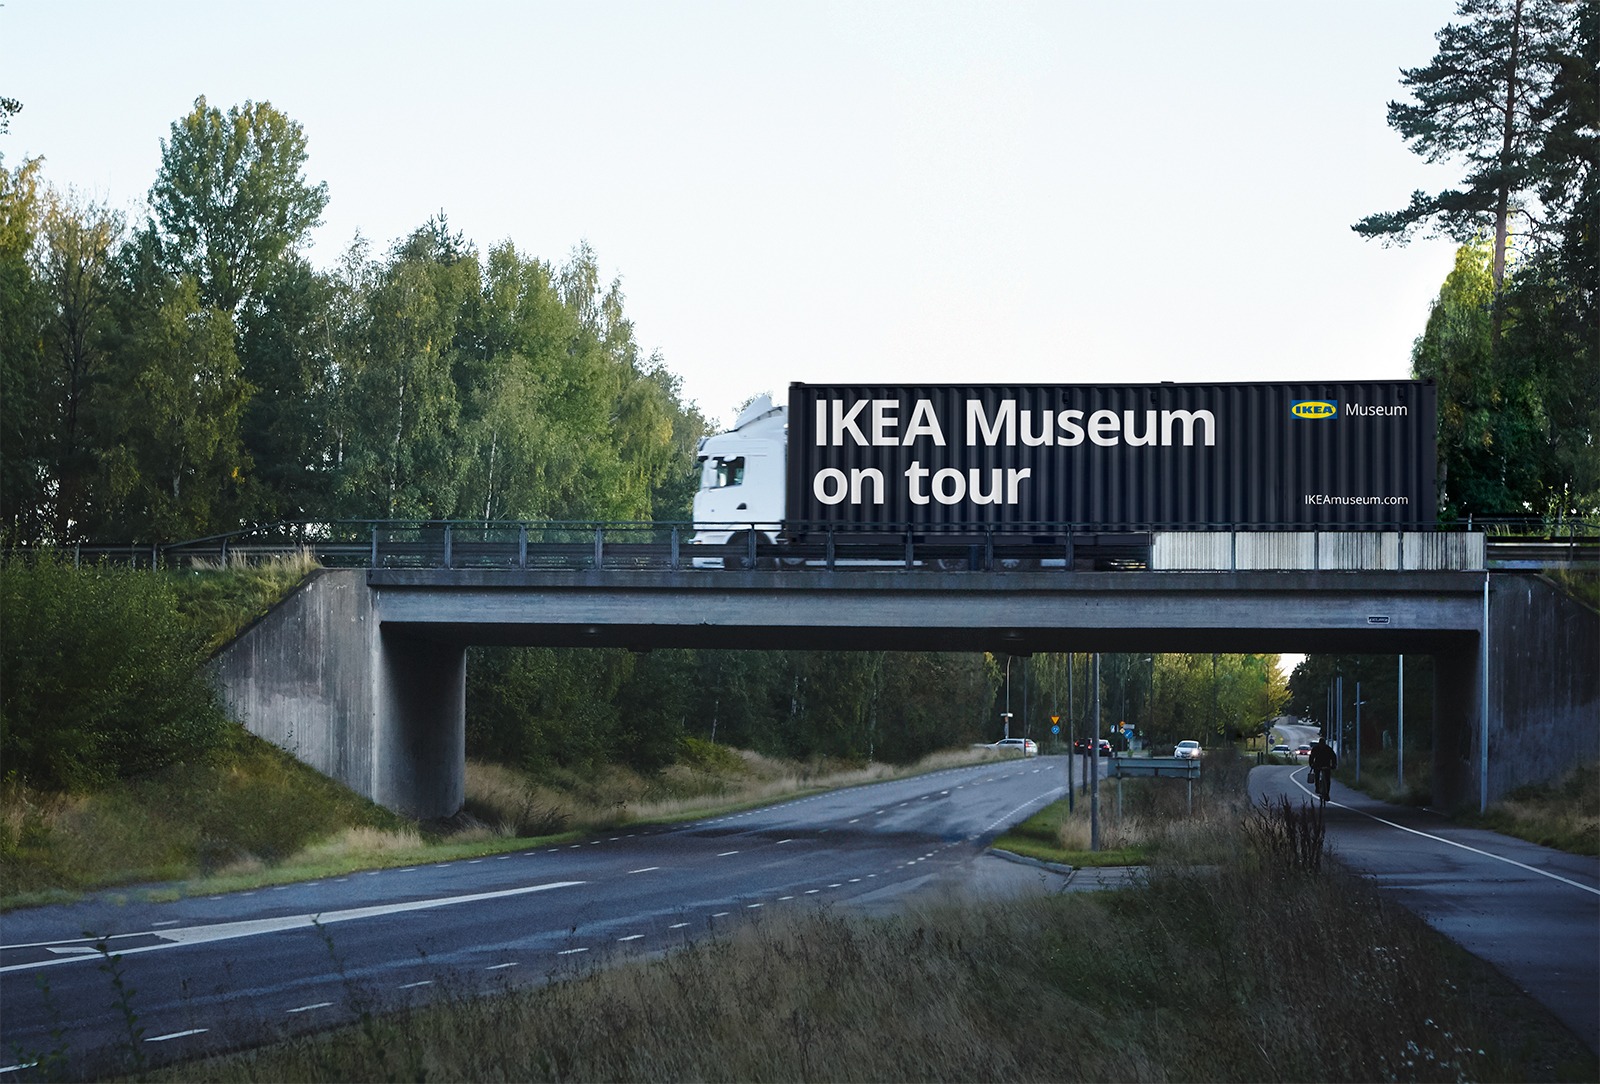 Bäume, eine Straße und eine Autobrücke, auf der ein LKW mit einem Container mit der Aufschrift „IKEA Museum on tour“ entlangfährt.